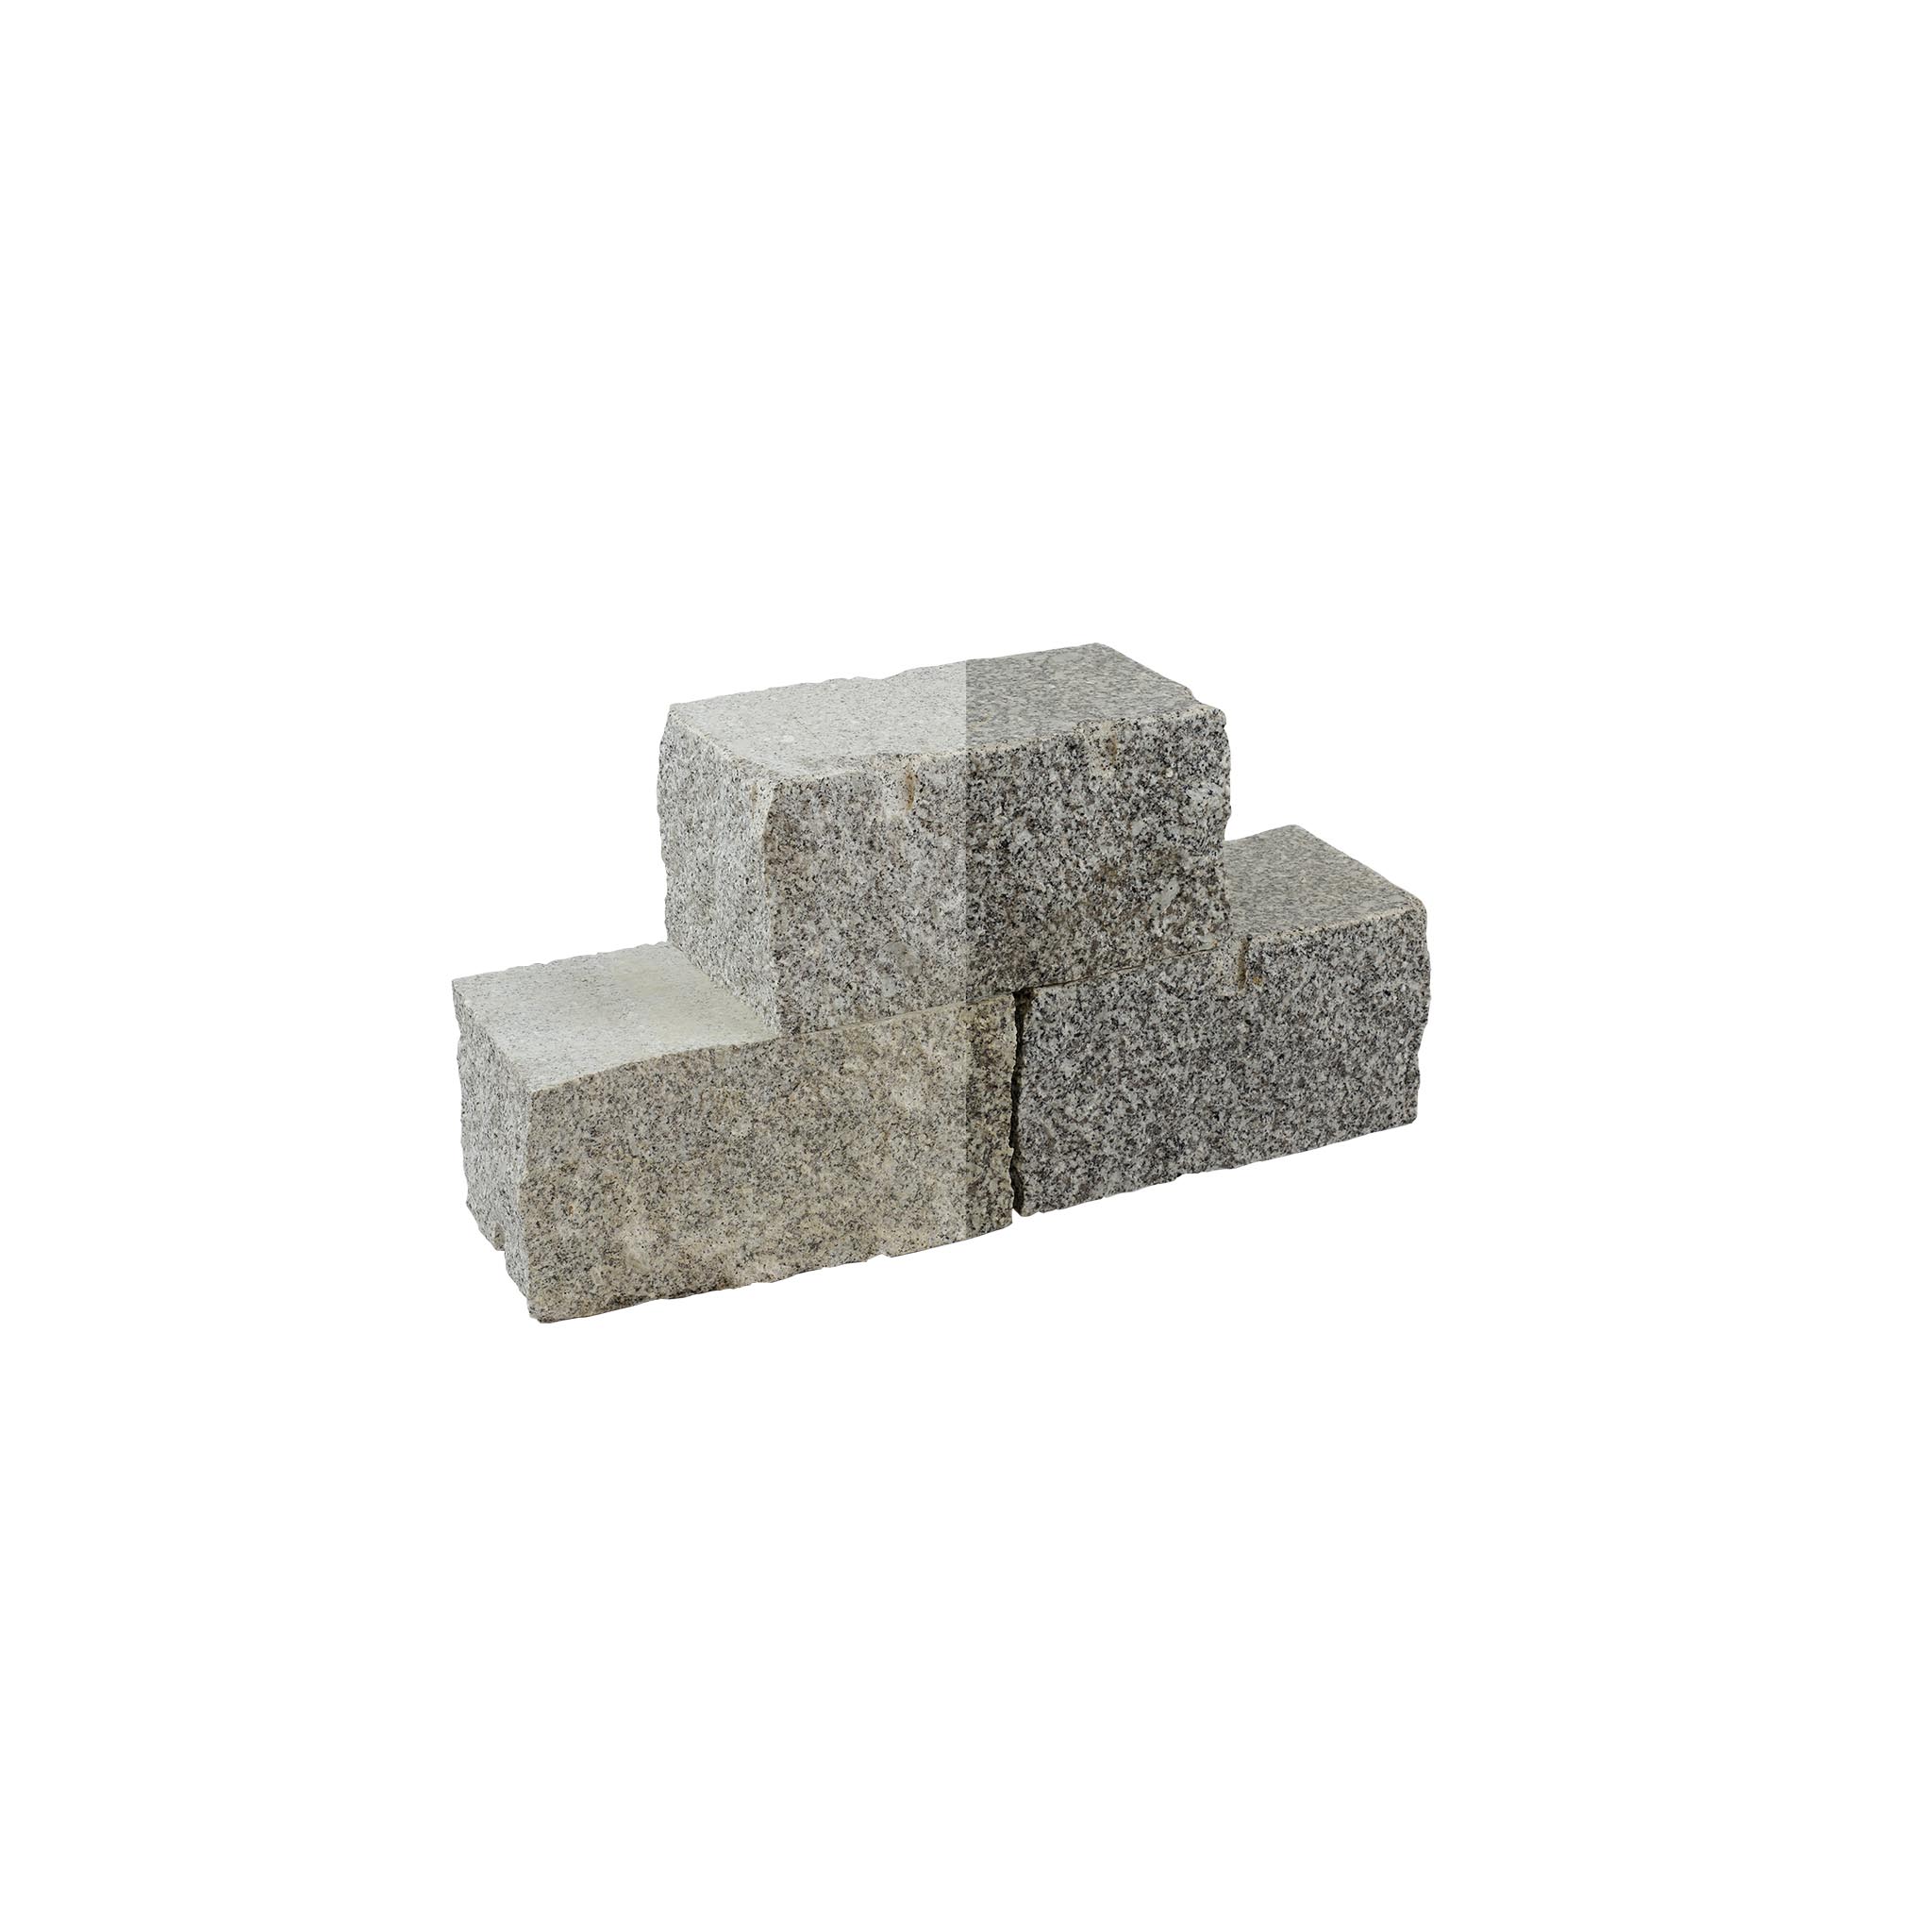 Mauersteine, Granit grau (Schlesisch) gesägt & gespalten